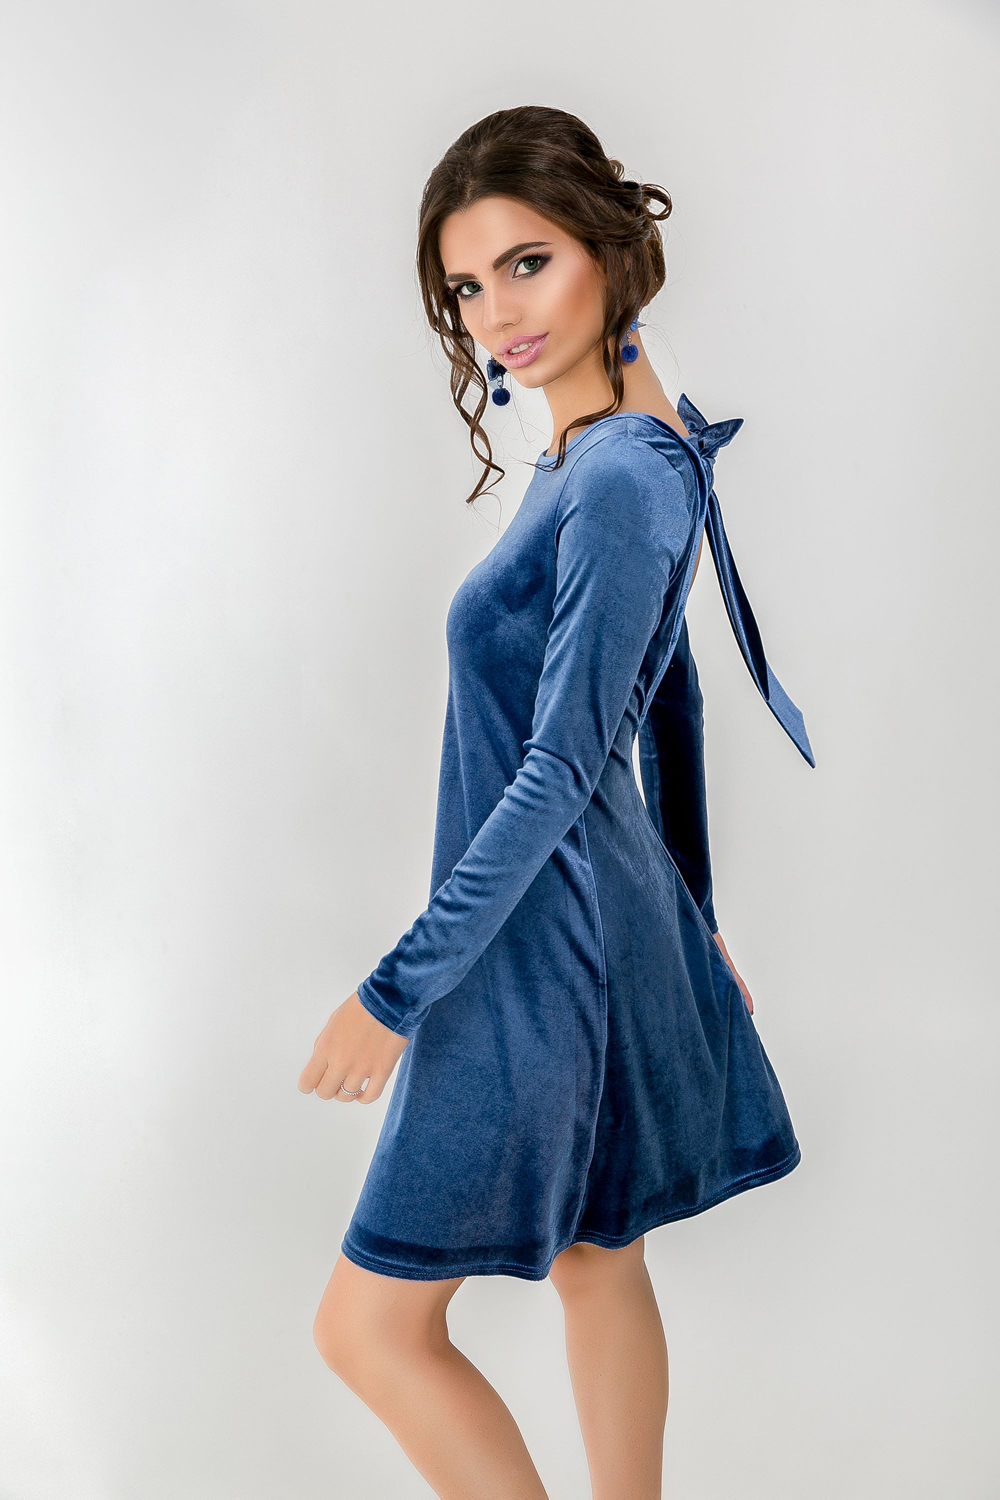 Велюровое платье с вырезом на спине и бантом в голубом  цвете